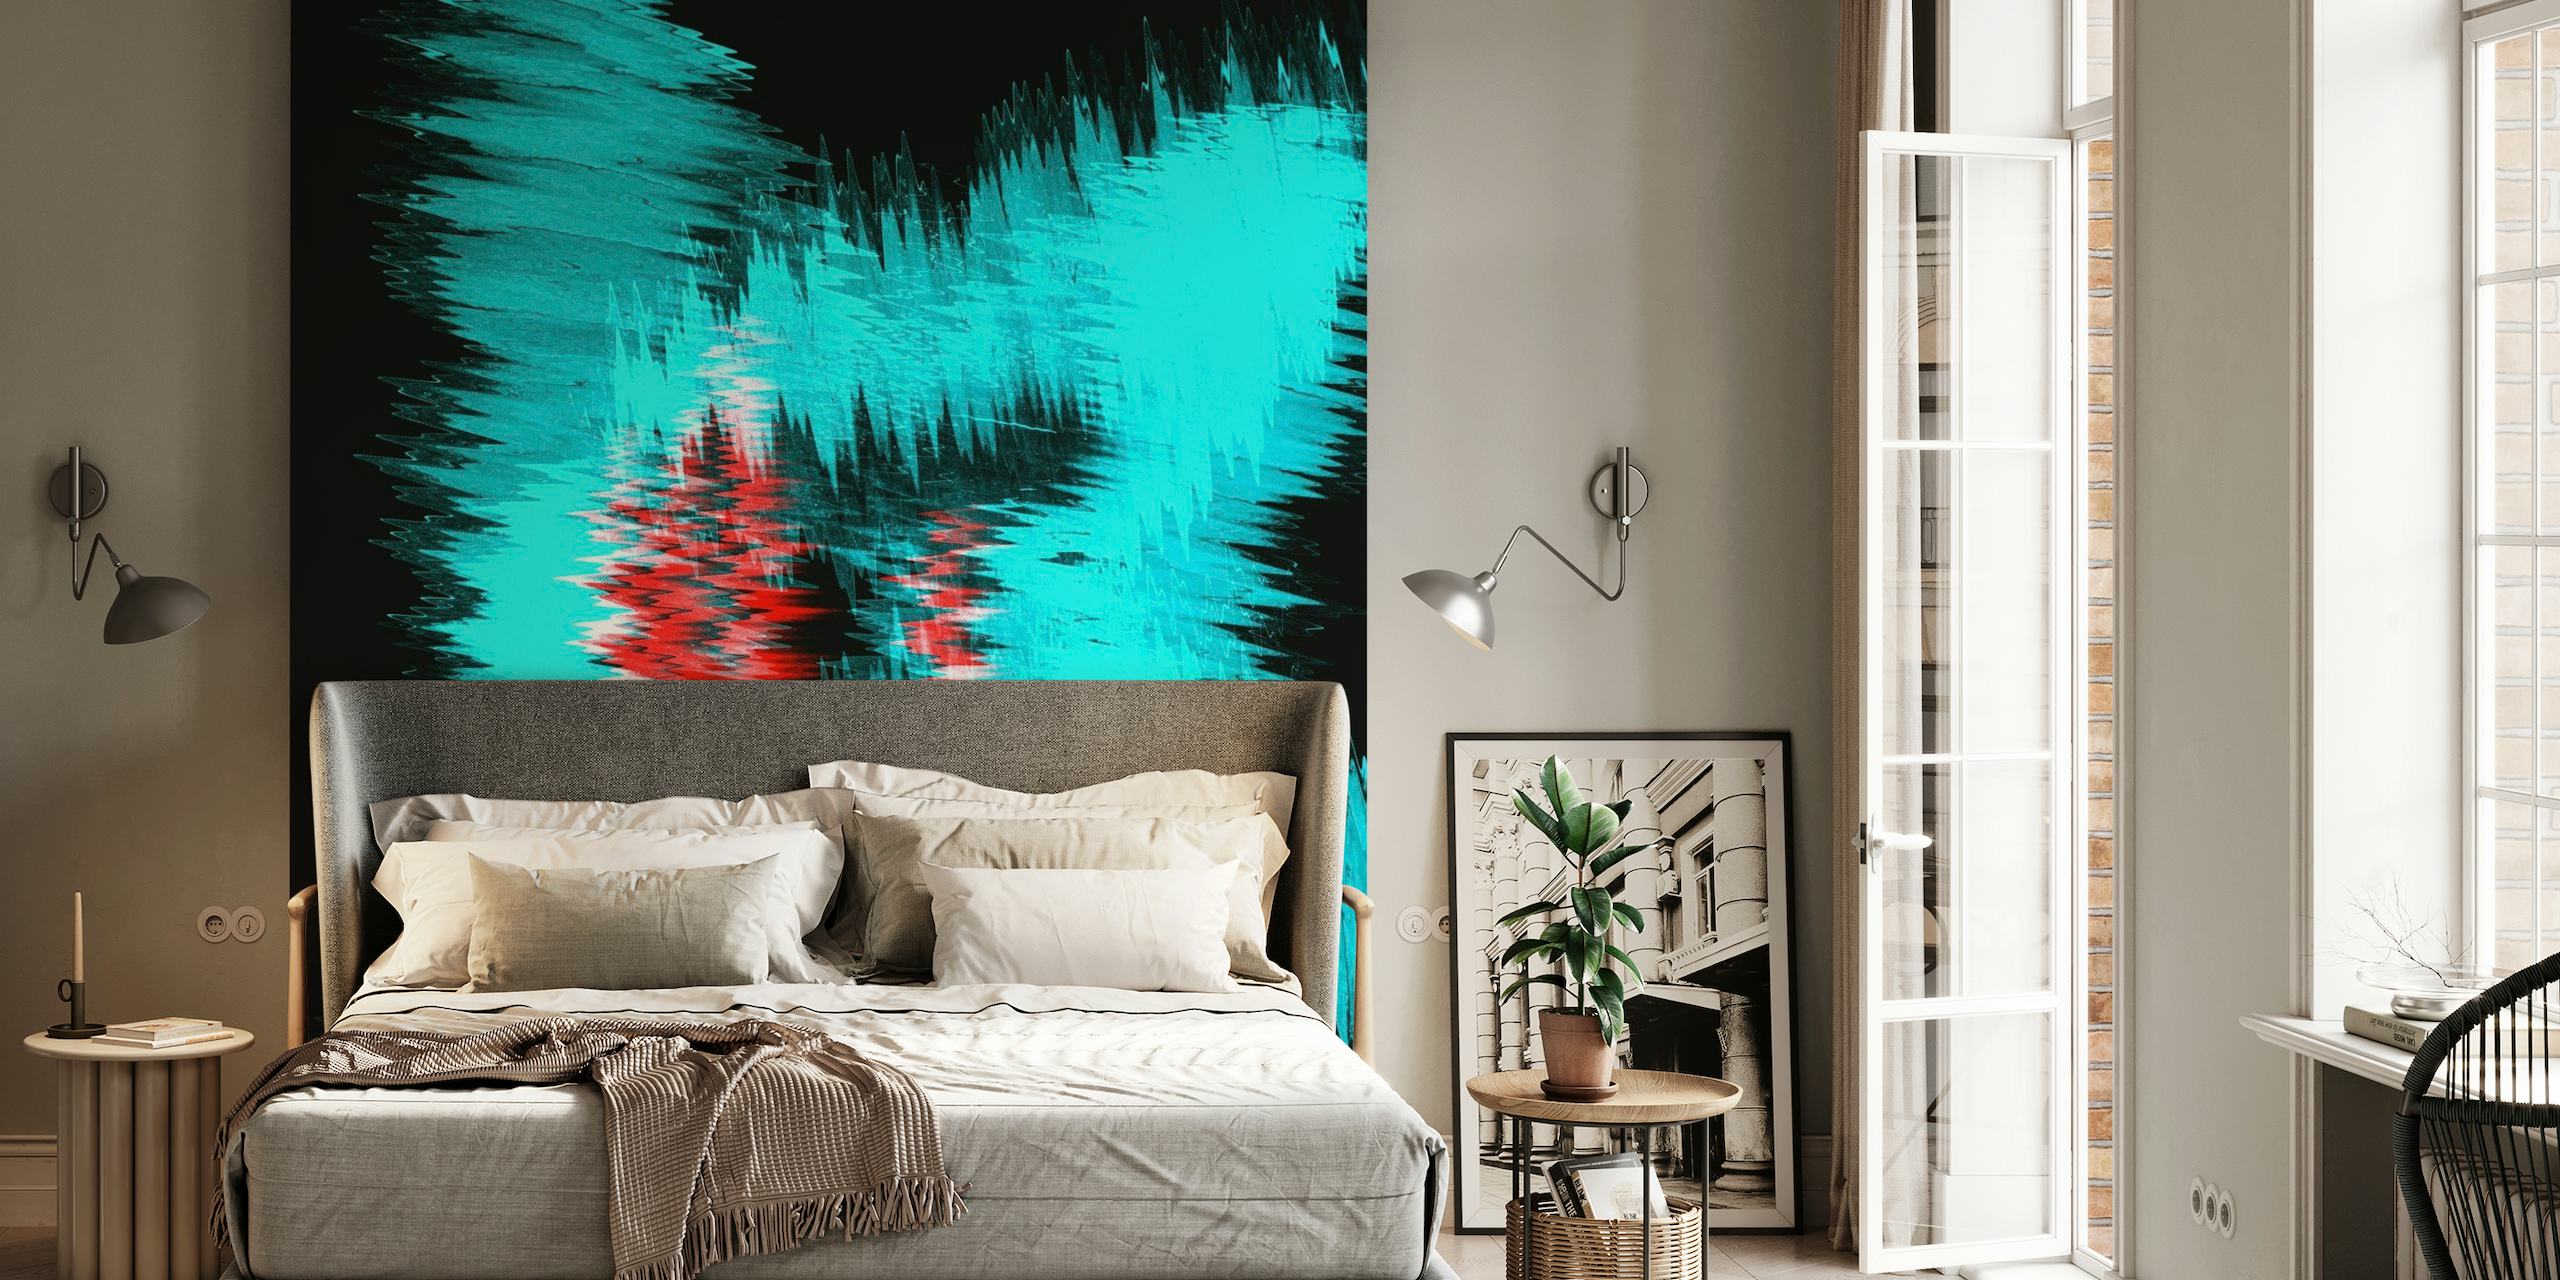 Abstract fotobehang met aquablauwe en levendige rode tinten in een dynamisch ontwerp